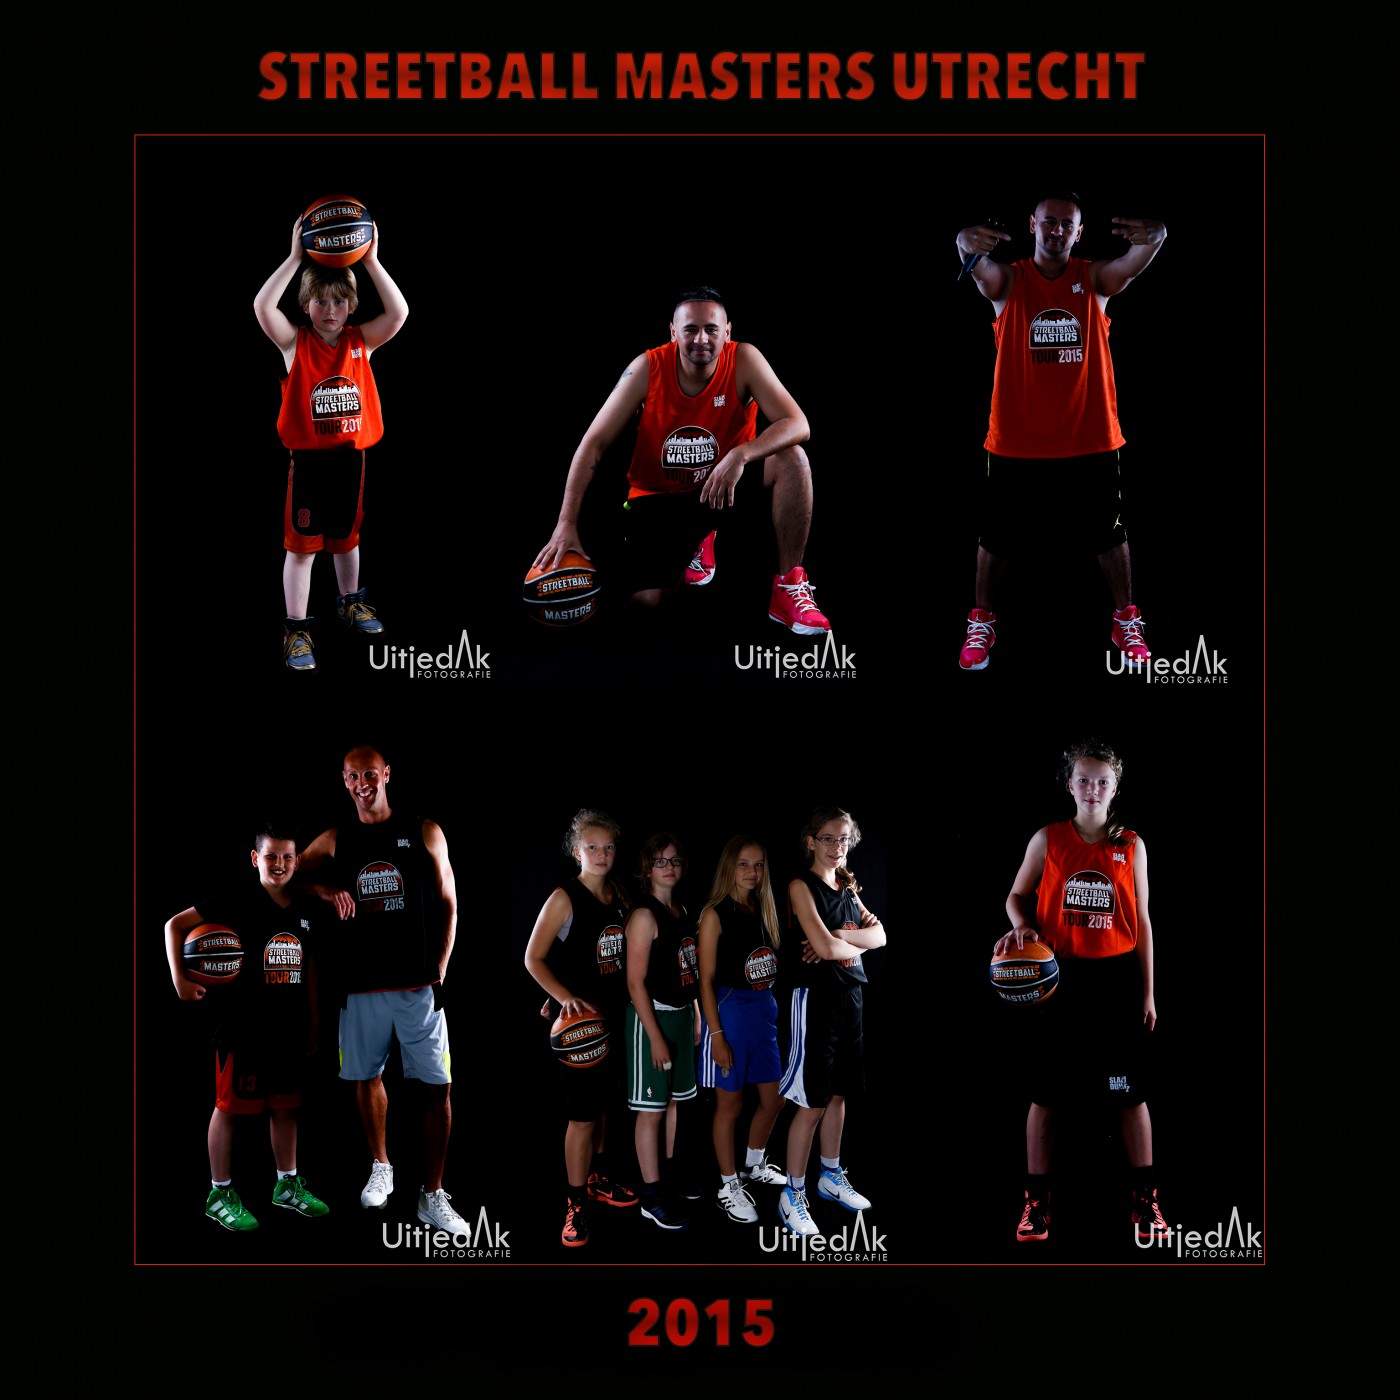 Streetball Masters Utrecht, studiofoto's Uitjedakfotografie